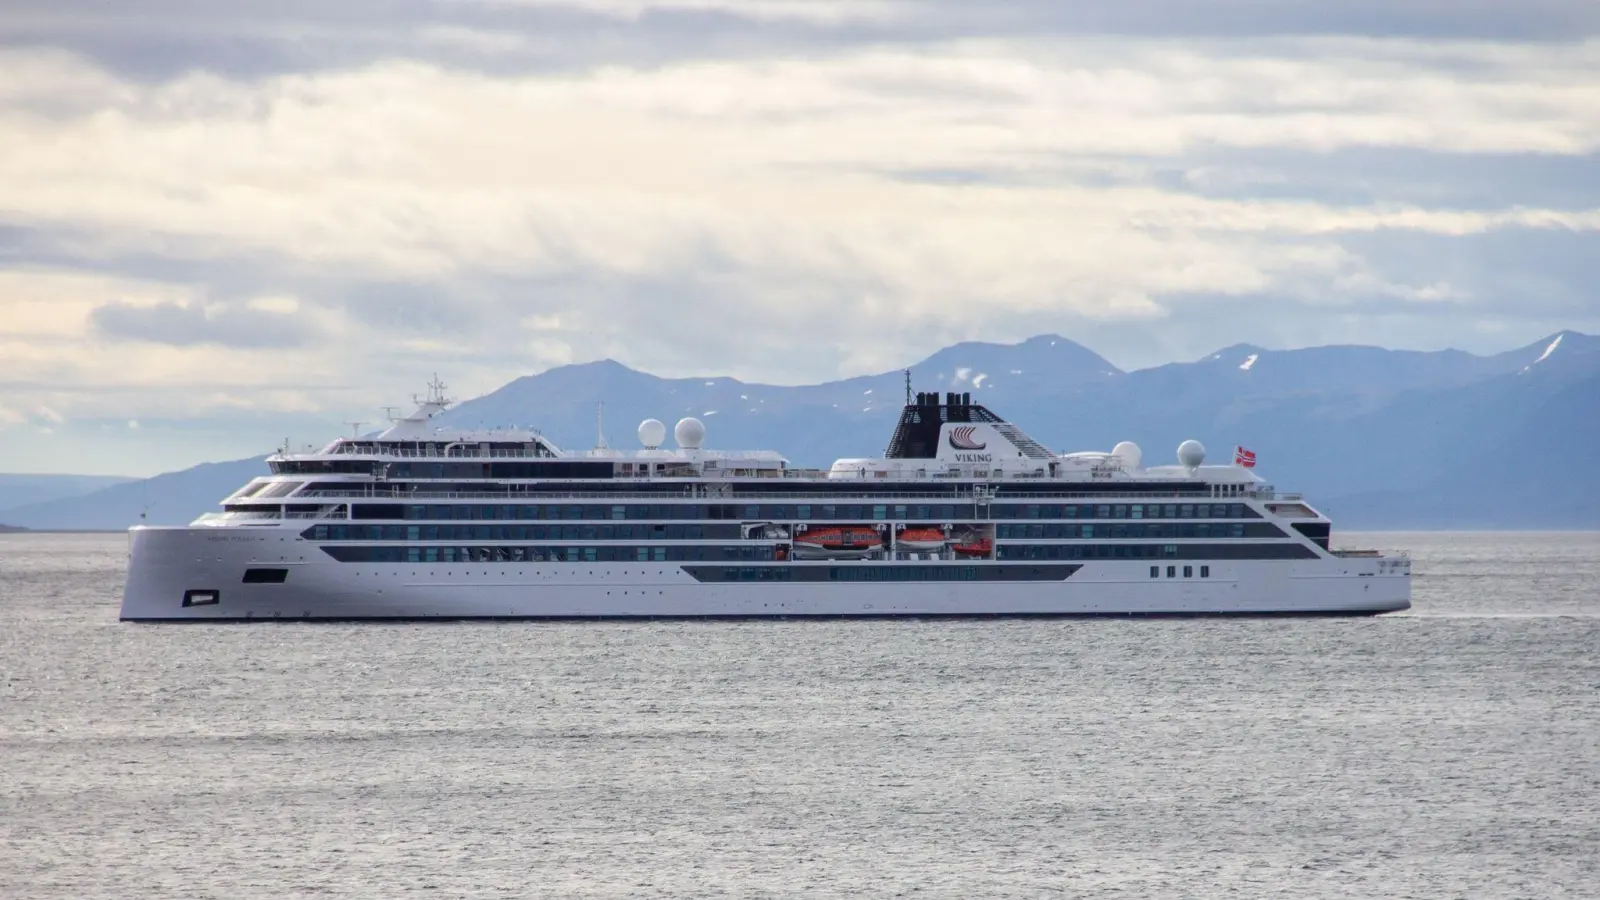 Das Kreuzfahrtschiff „Viking Polaris“ liegt vor Ushuaia. Beim Aufprall einer gewaltigen Welle auf das Kreuzfahrtschiff auf Antarktis-Tour sind ein Fahrgast getötet und vier weitere verletzt worden. (Foto: Cristian Urrutia/telam/dpa)